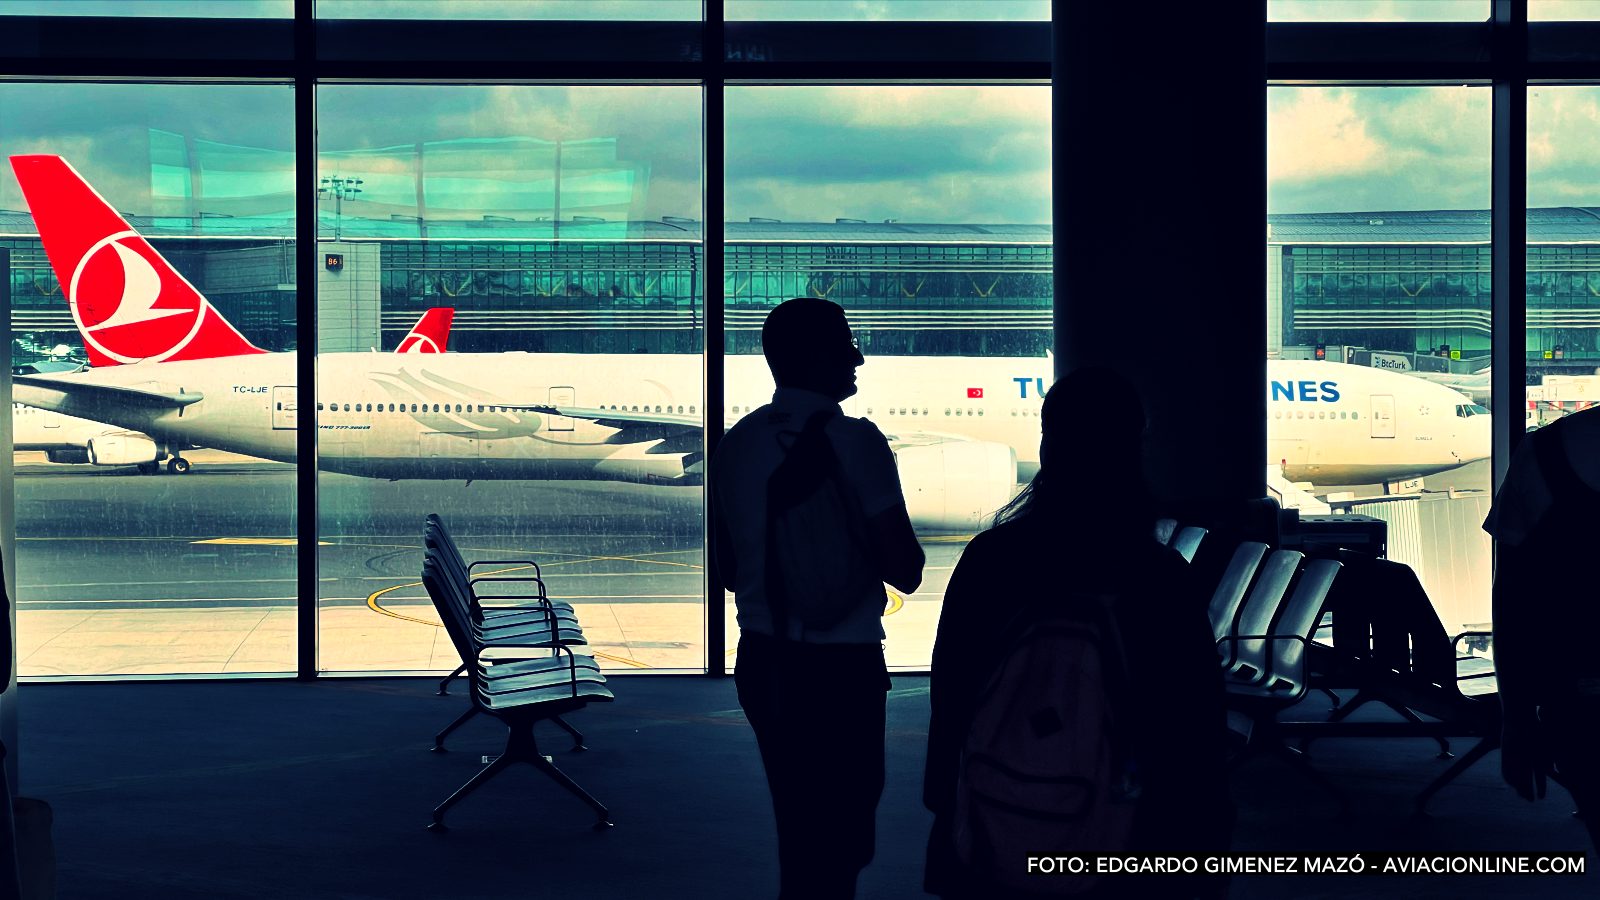 ¿Turquía Airlines a Chile?  El sistema ANAC Brasil divulga vuelos vía São Paulo